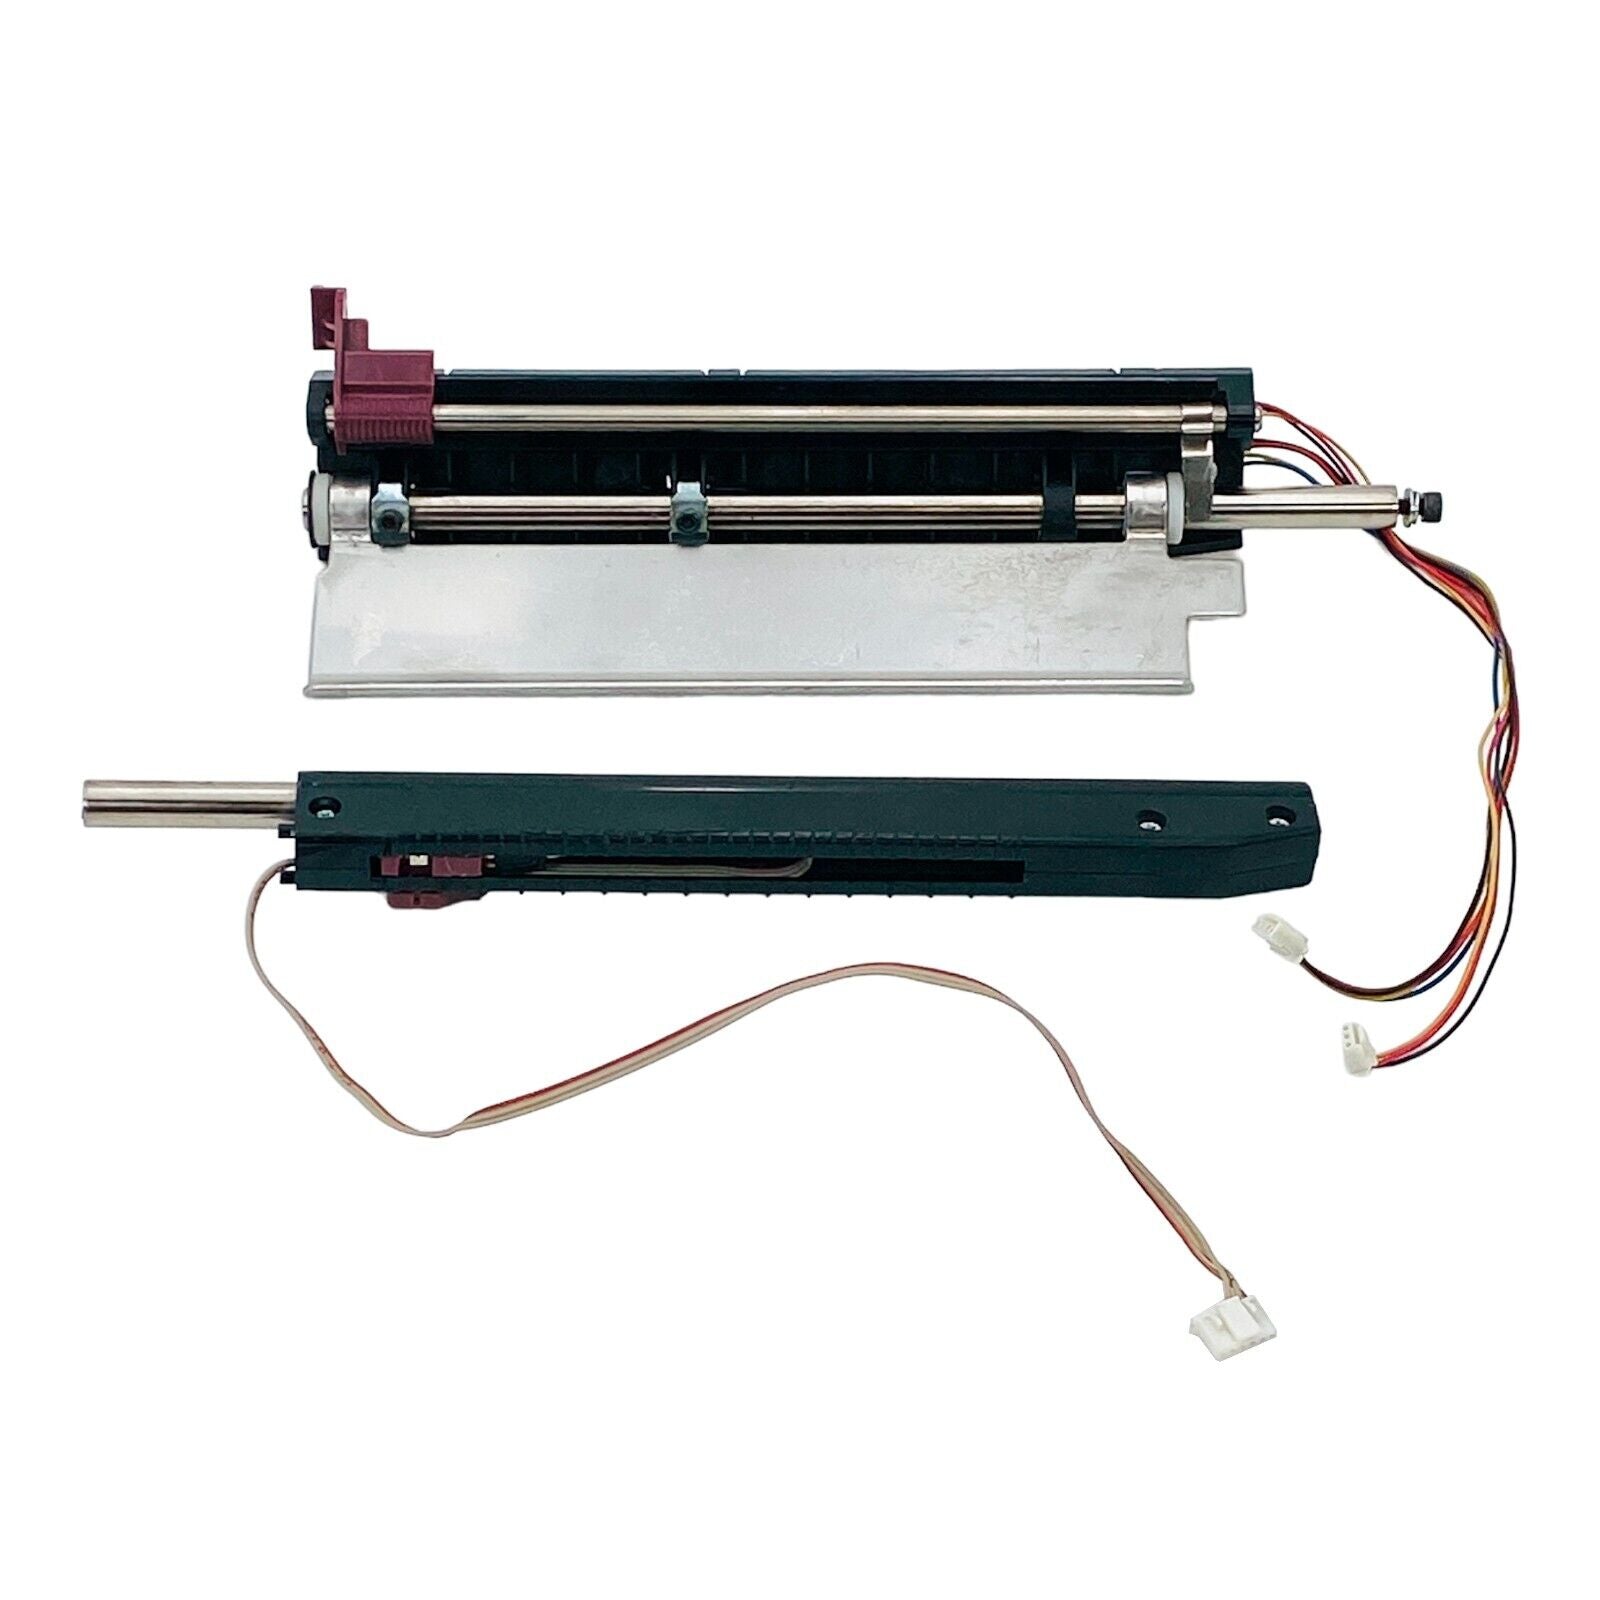 OEM 79849M Media Sensor Maintenance Kit for Zebra ZM600 Label Printer